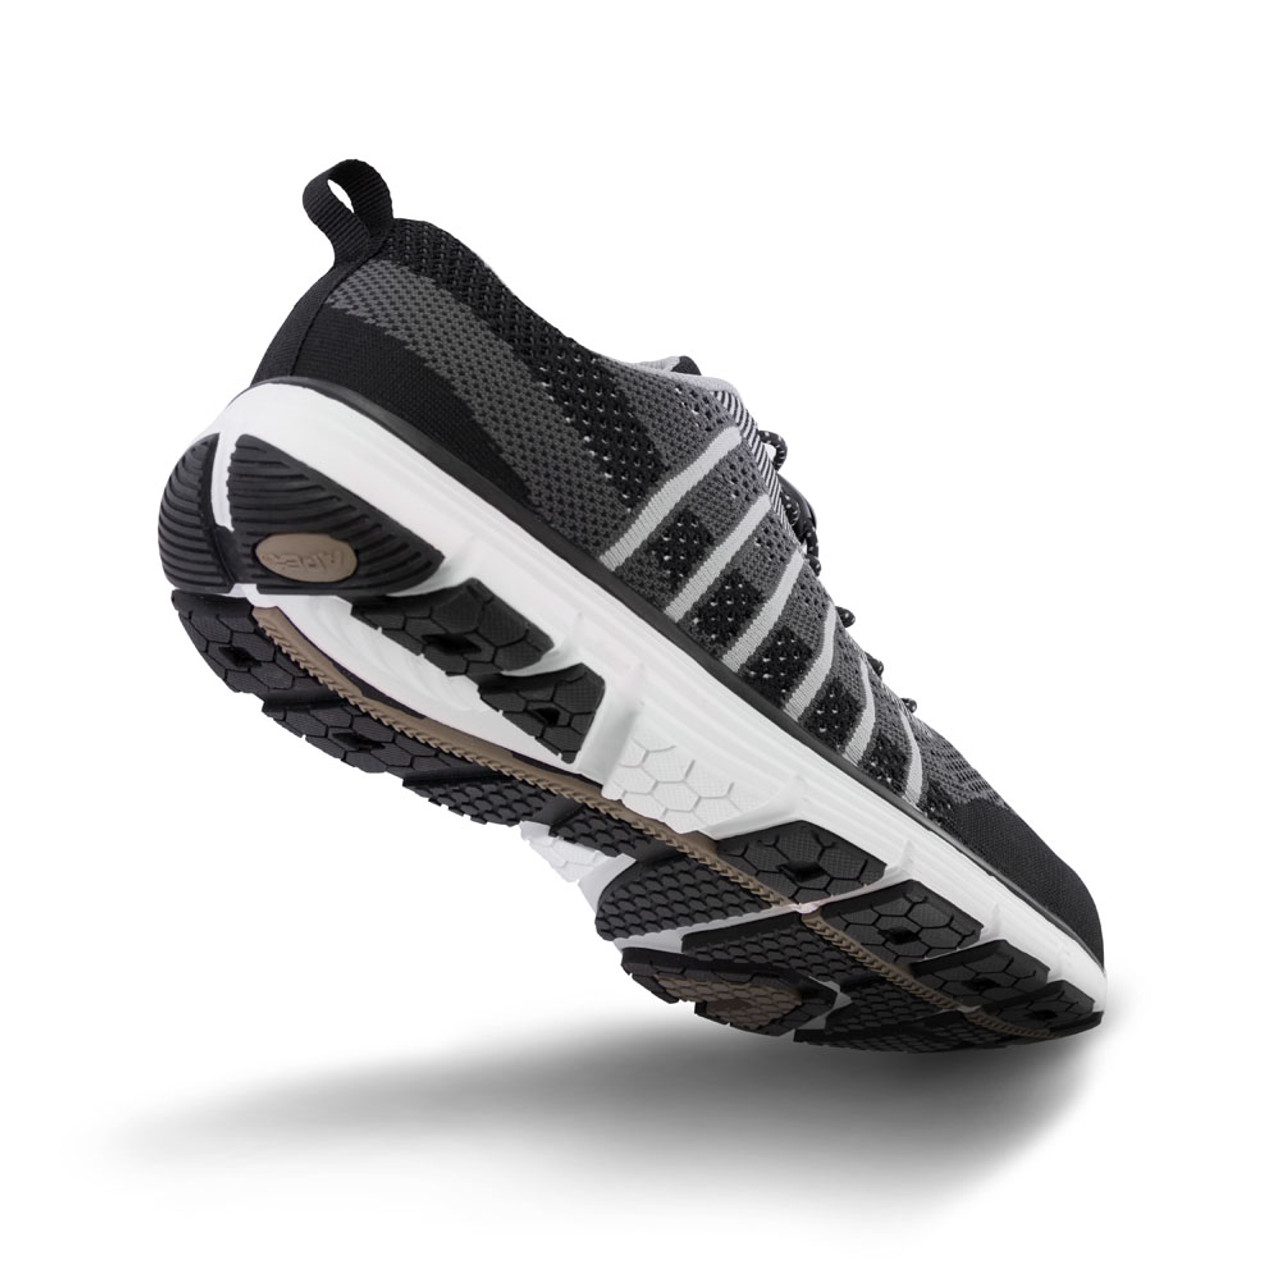 APEX Men's Bolt Knit Active Shoe - A7000M - Black